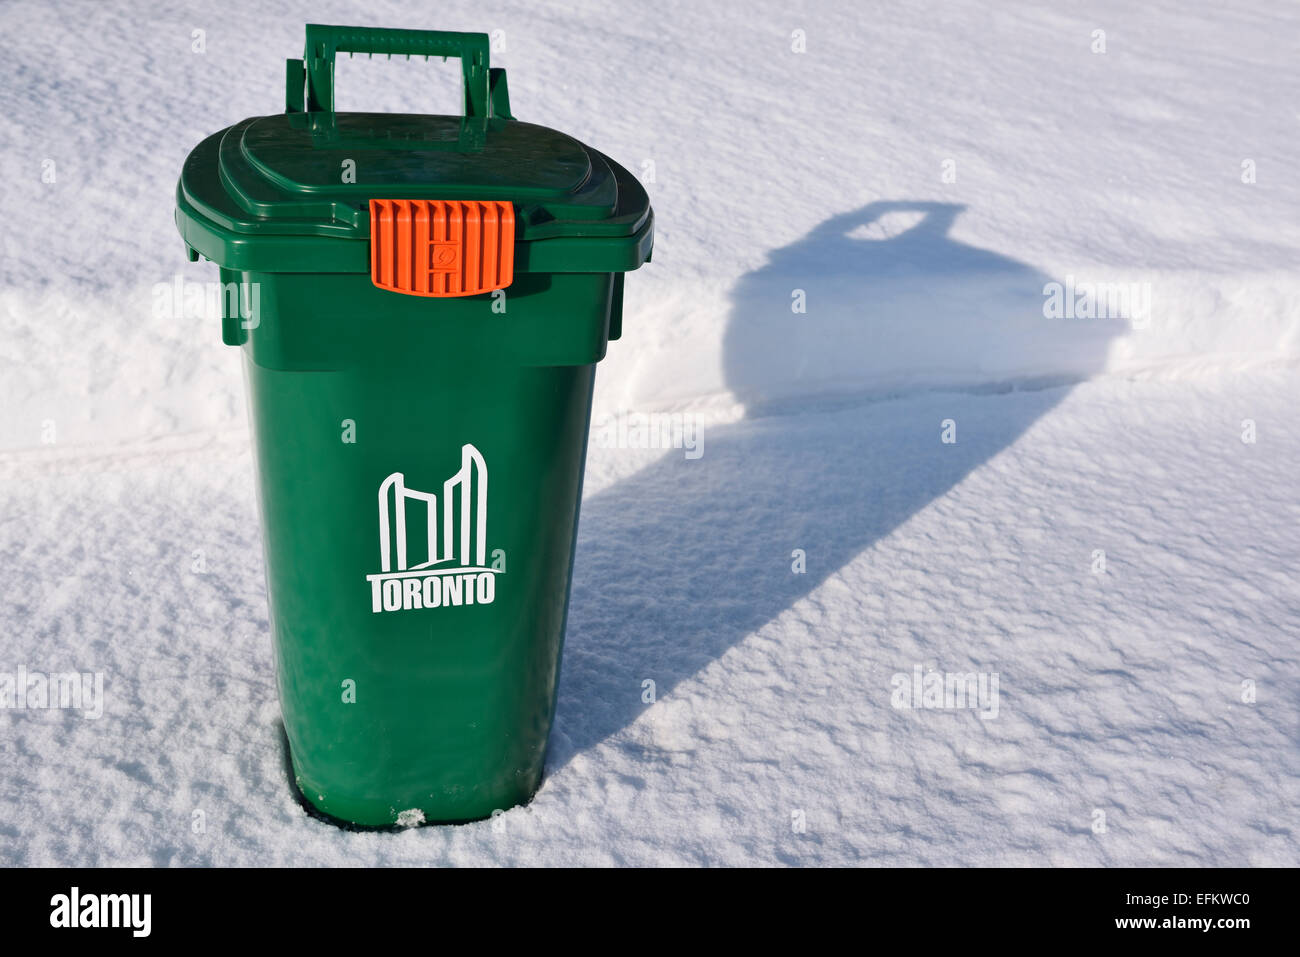 Nuovo toronto green bin riciclaggio sulla neve fresca marciapiede coperto in inverno Foto Stock